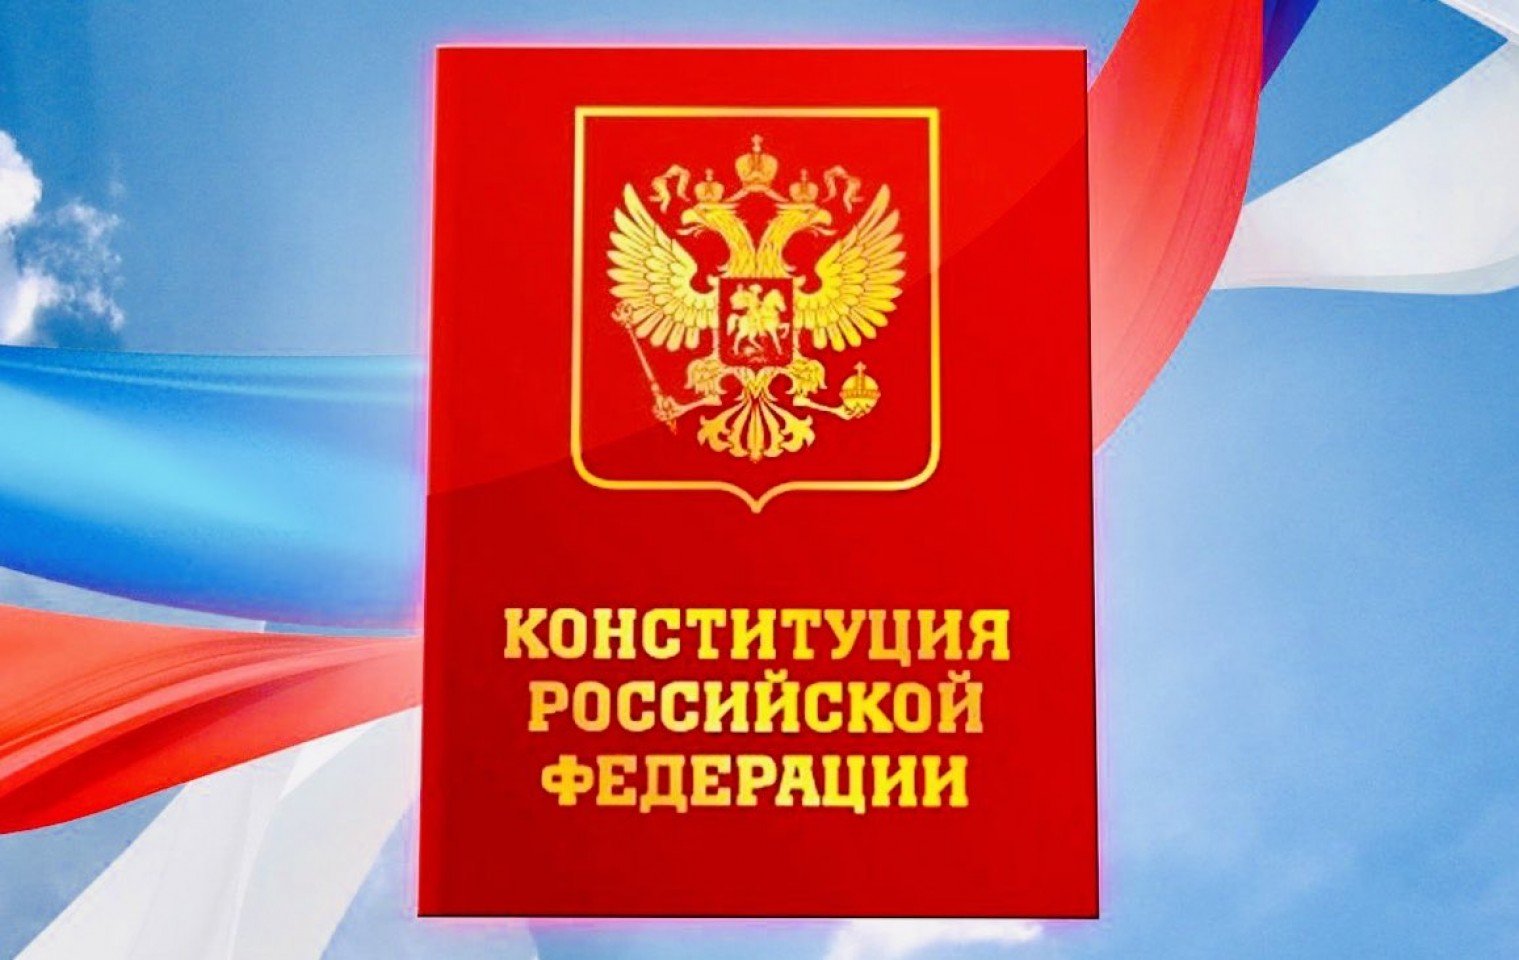 МВД получит 30 млн рублей на закупку нового издания Конституции